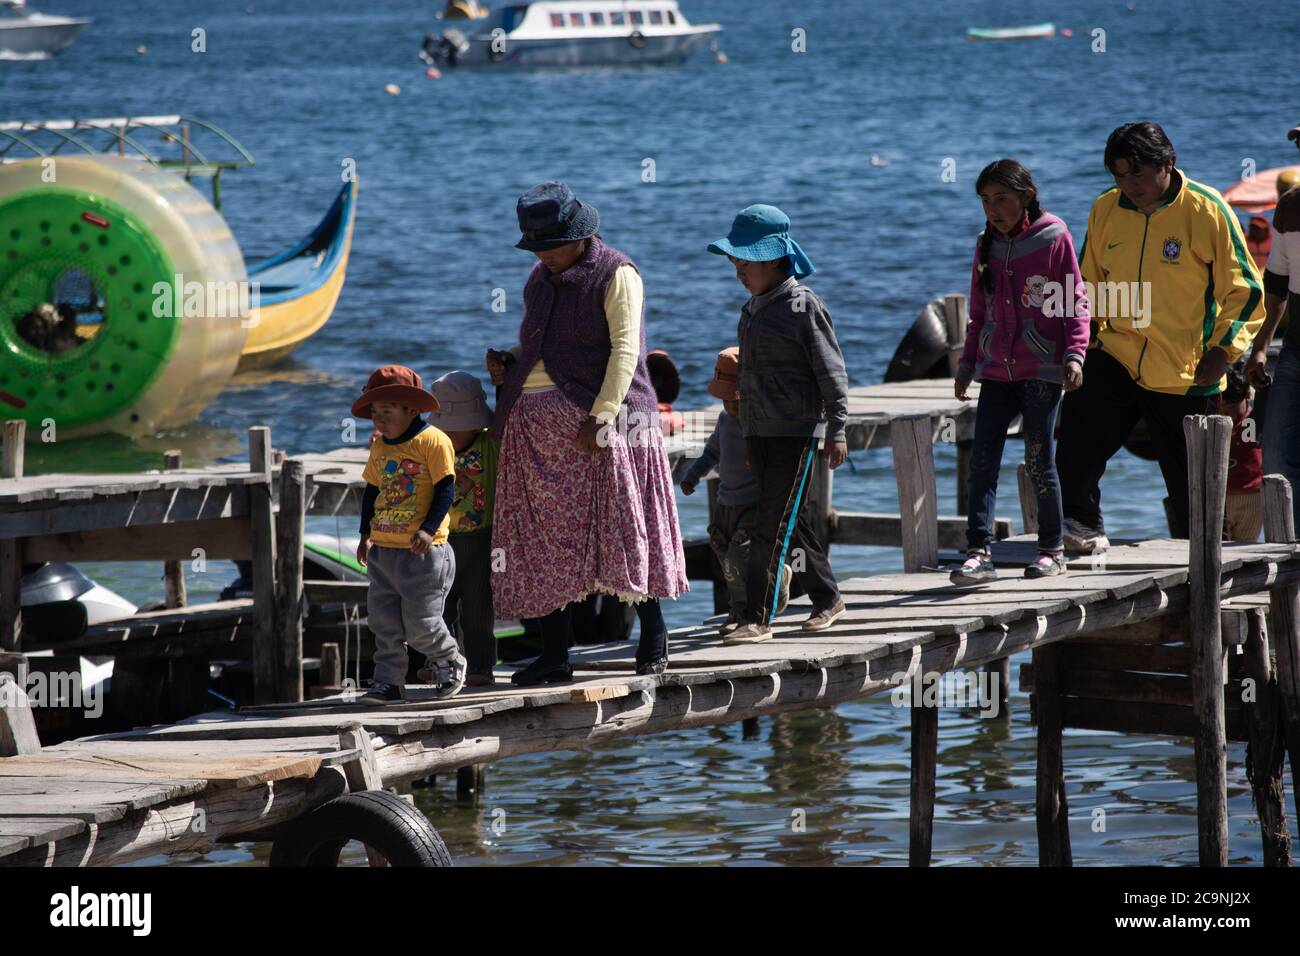 COPACABANA, BOLIVIEN - 24. JULI 2016: Eine bolivianische Familie geht durch einen hölzernen Pier in Copacabana, Bolivien Stockfoto